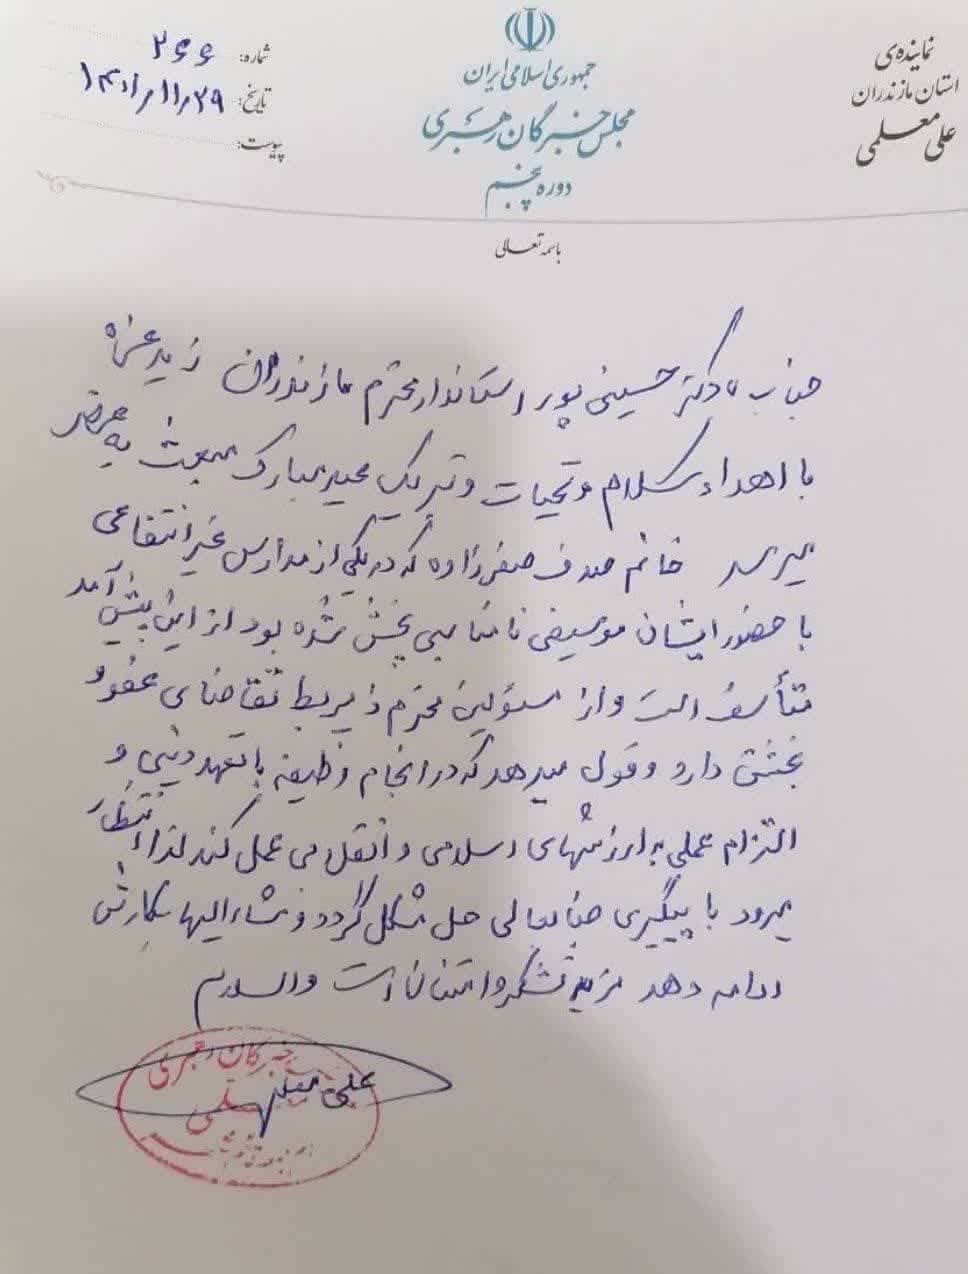 معلم قائمشهری با دستور استاندار مازندران به مدرسه بازگشت